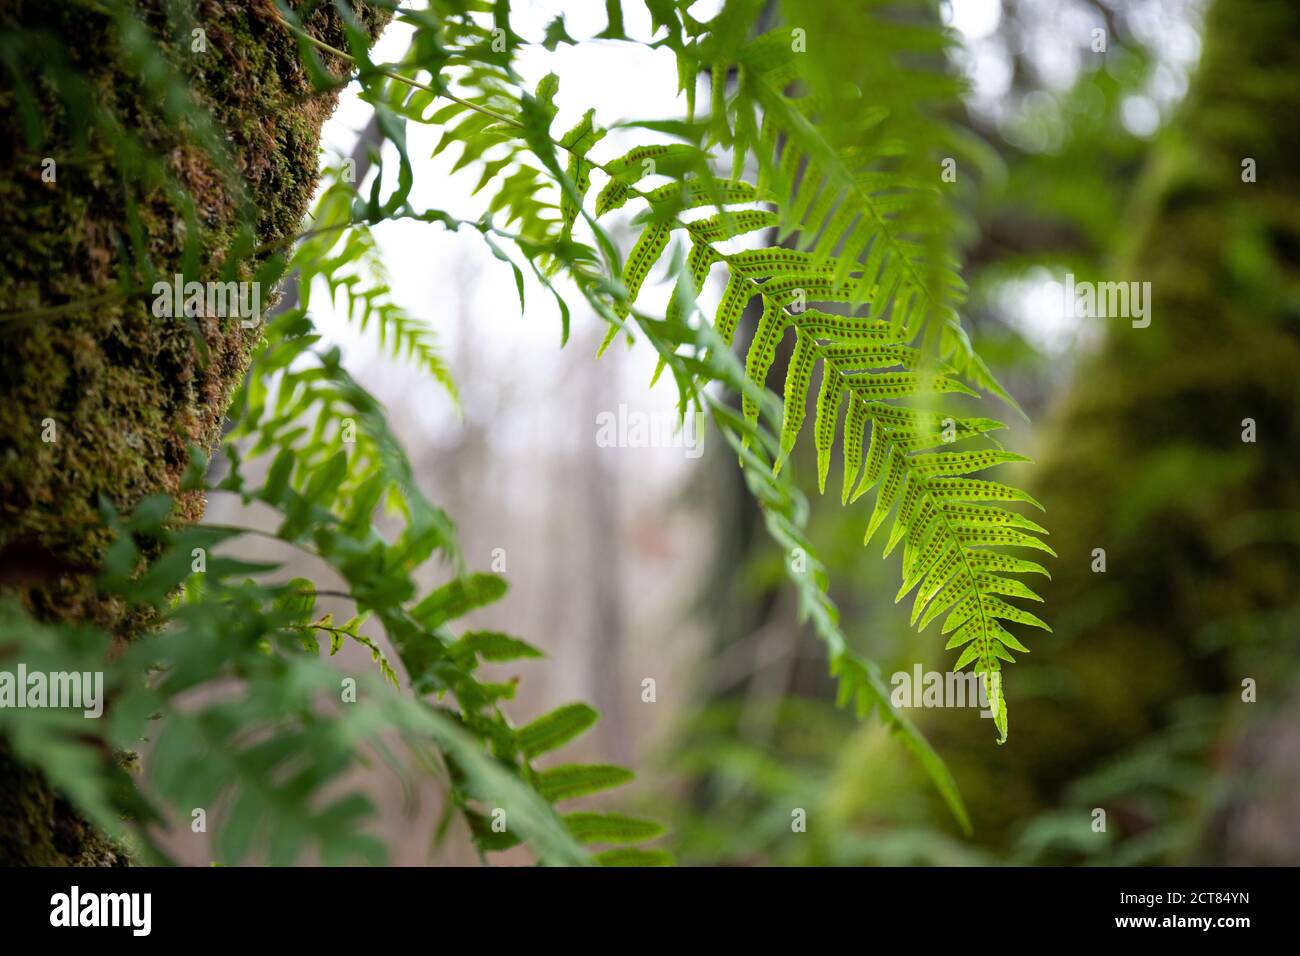 Primo piano di Fern con spore che crescono su un albero coperto di muschio In una foresta Foto Stock